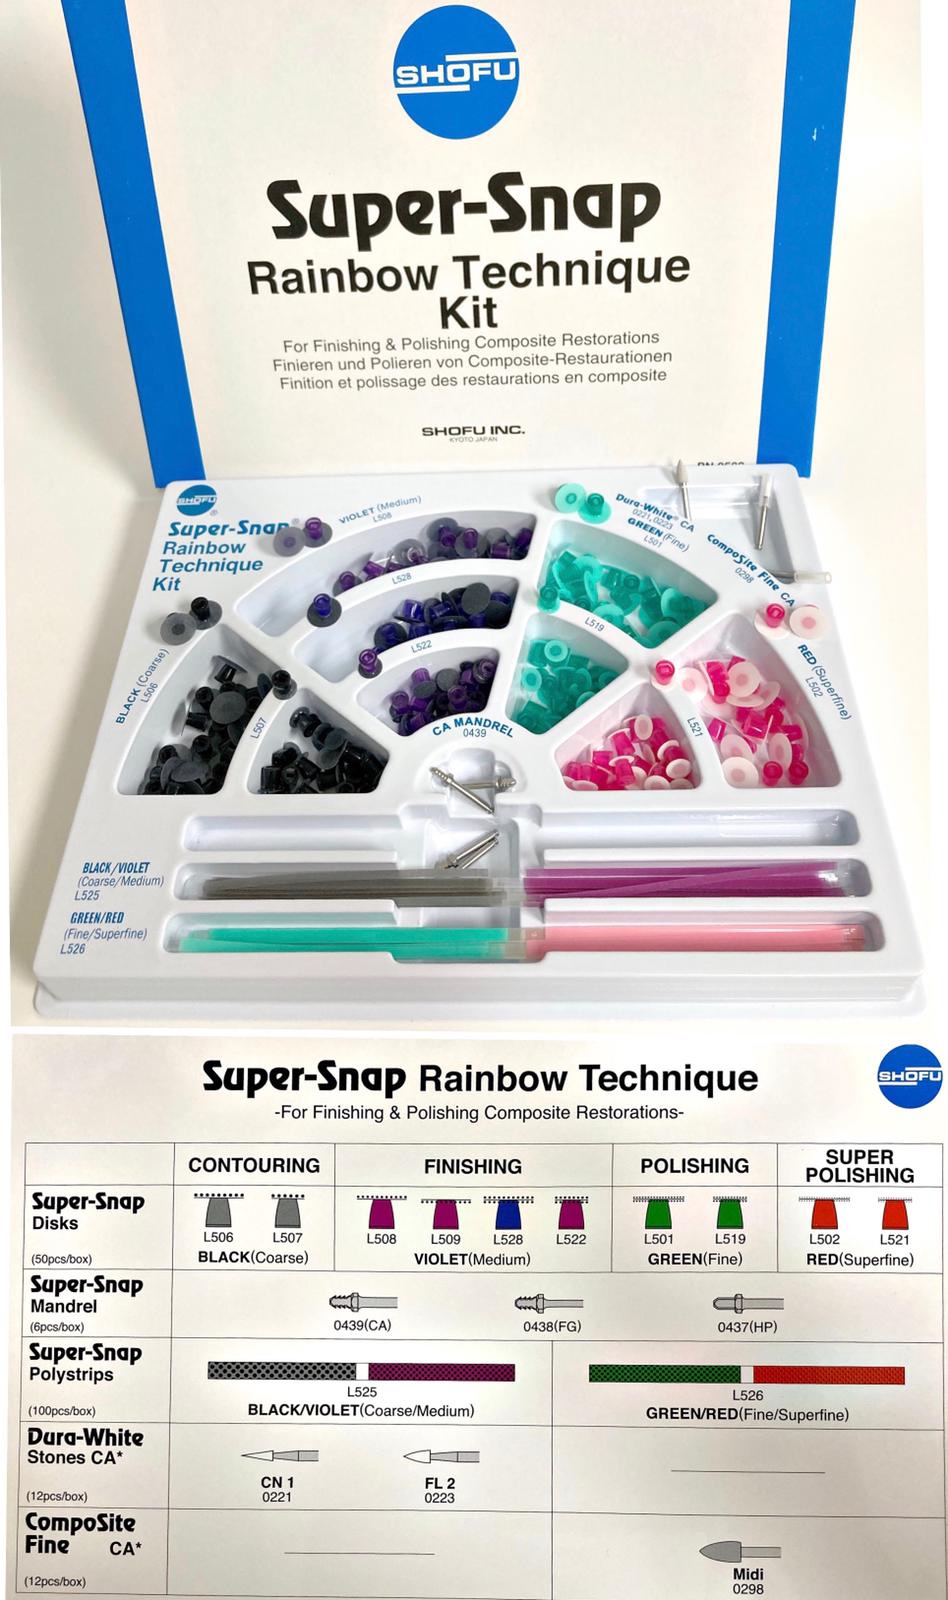 Super-Snap Rainbow Technique Kit